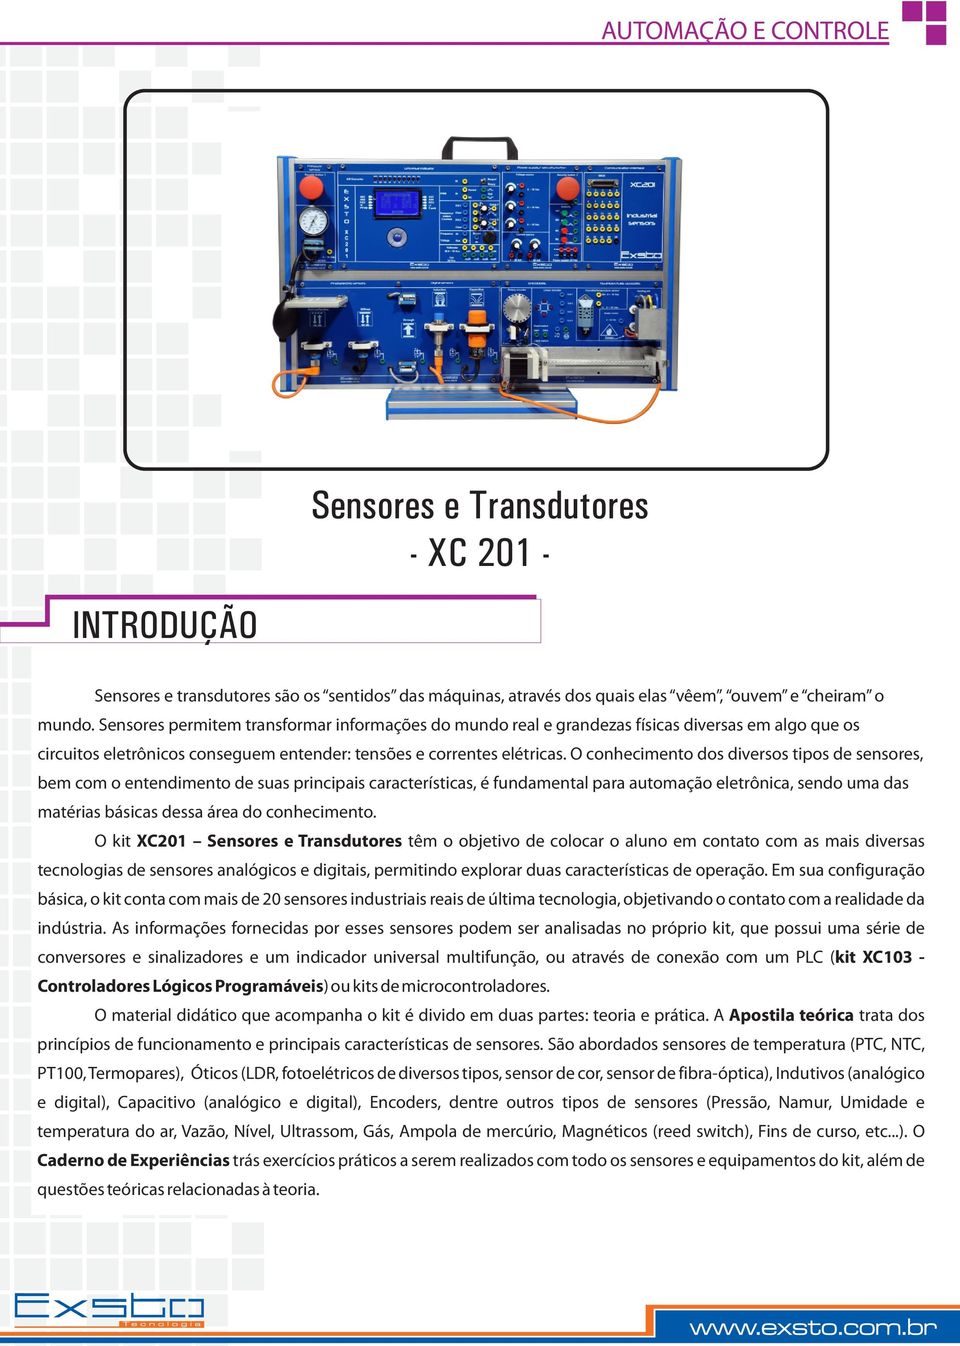 O conhecimento dos diversos tipos de sensores, bem com o entendimento de suas principais características, é fundamental para automação eletrônica, sendo uma das matérias básicas dessa área do